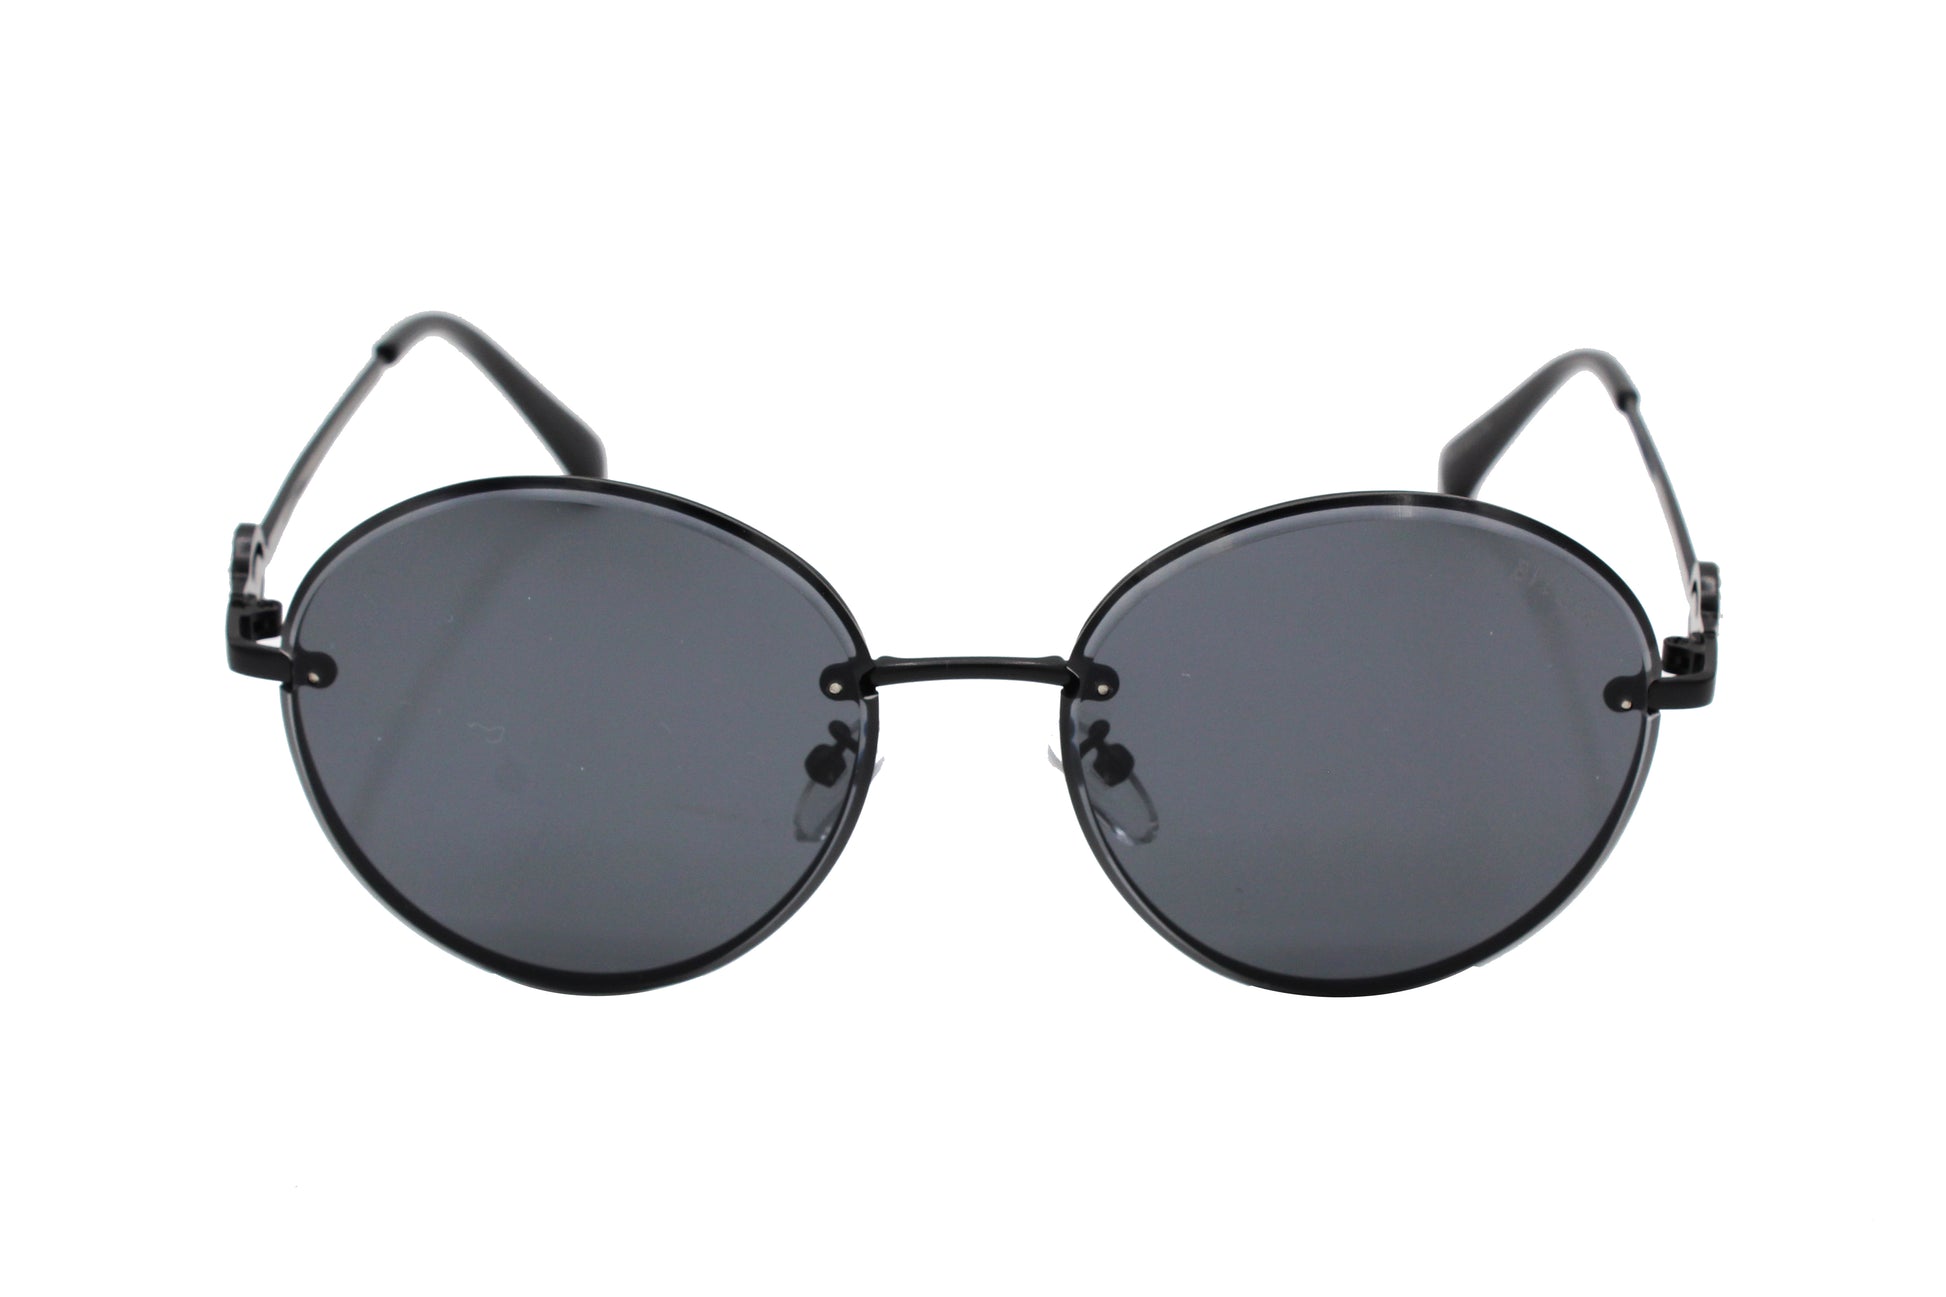 NS Classic - 2136 - Black - Sunglasses